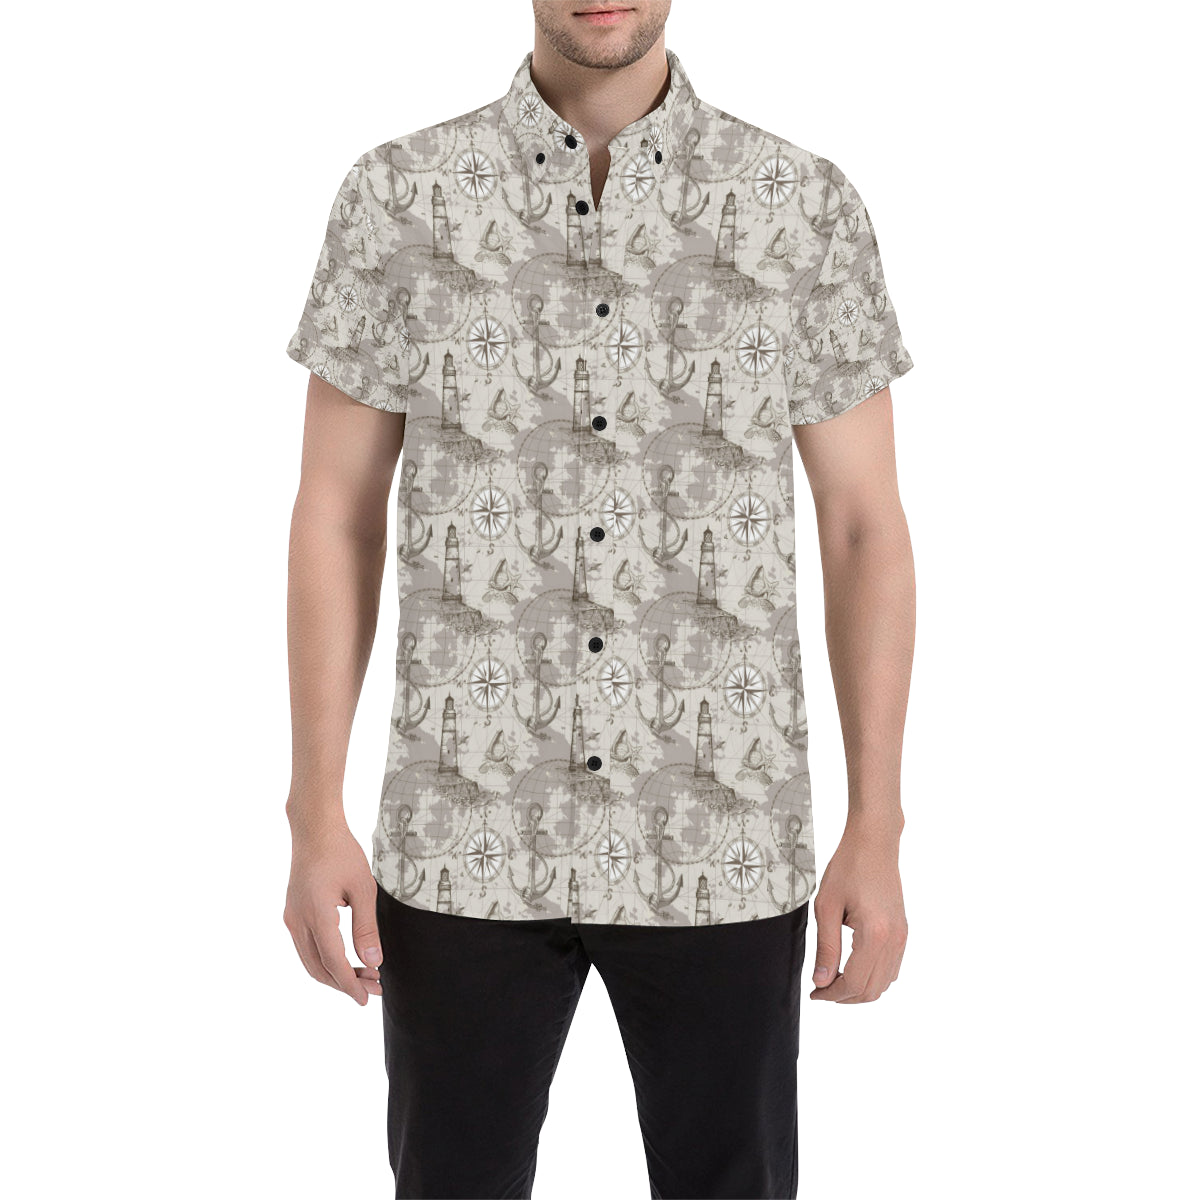 Nautical Map Design Themed Print Men's Short Sleeve Button Up Shirt